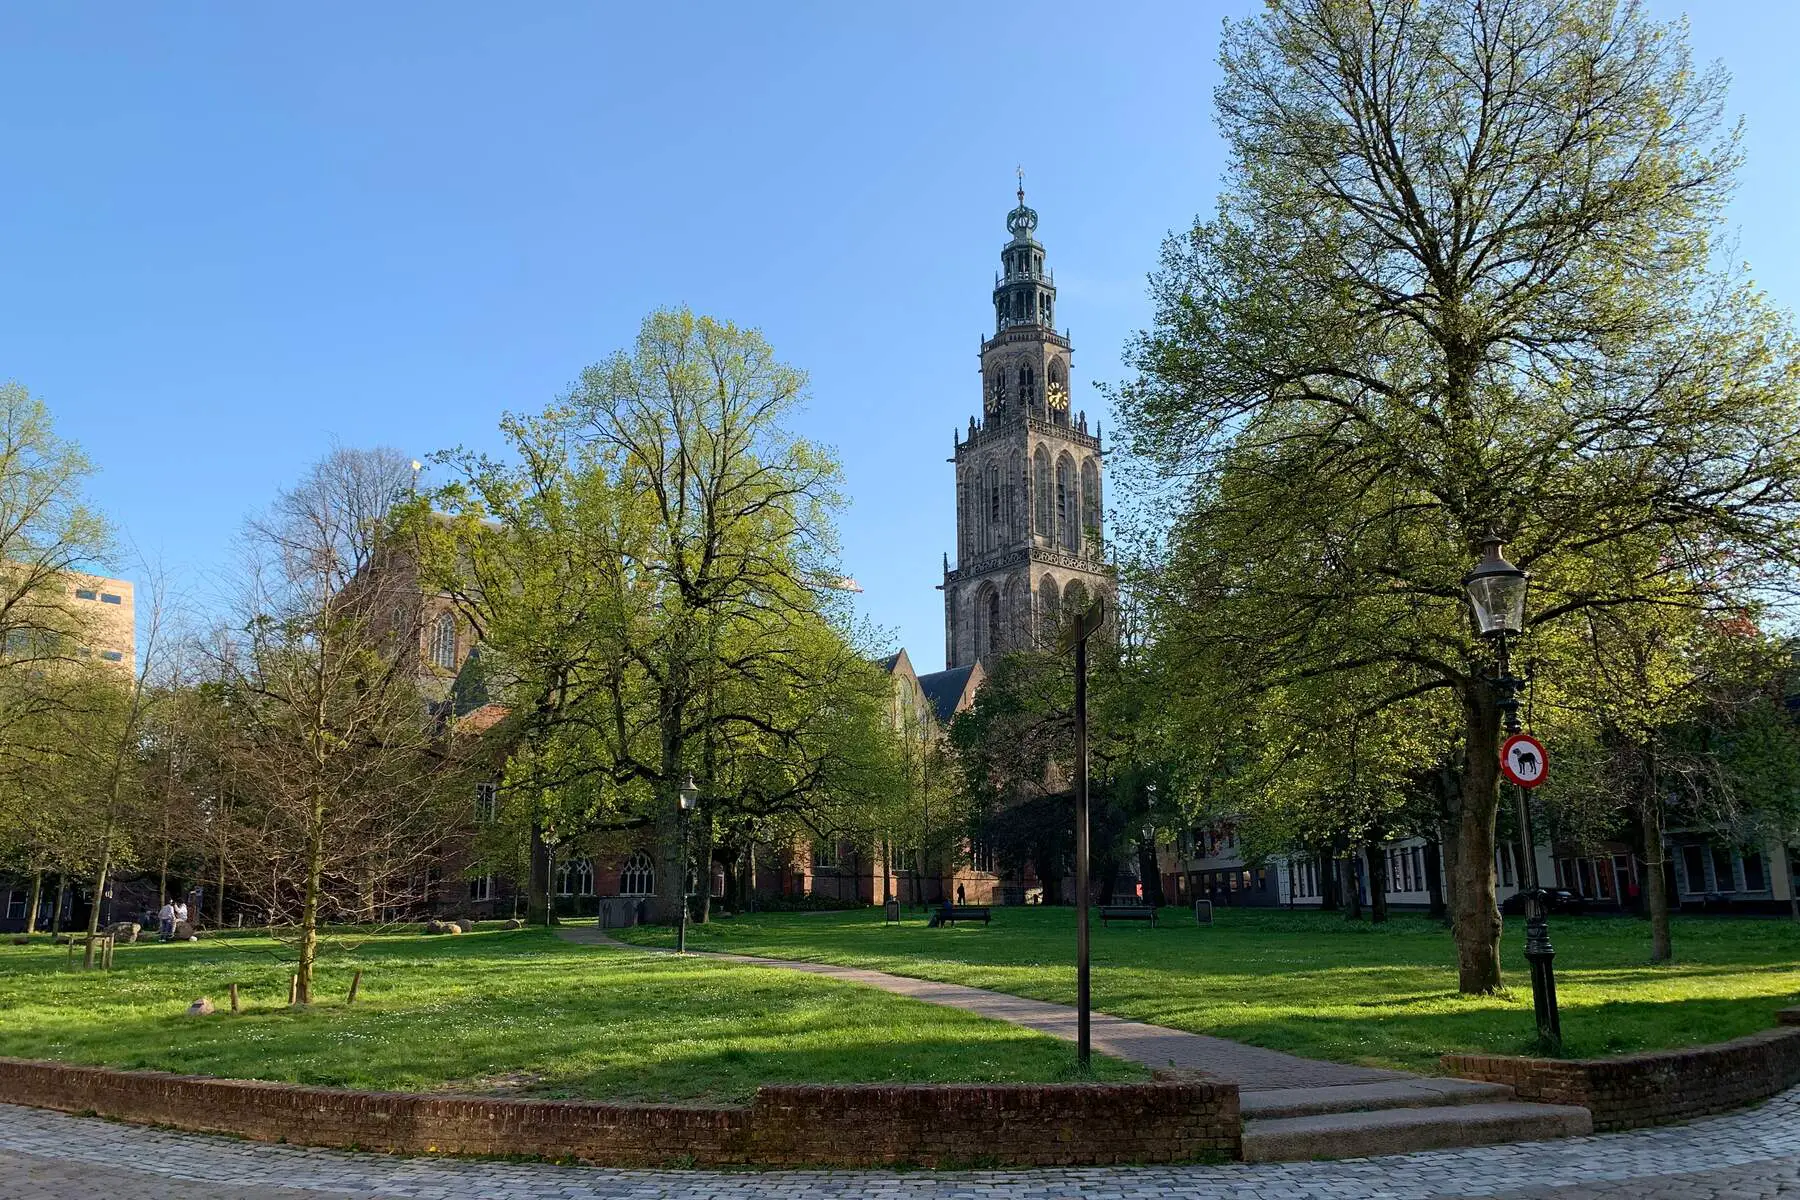 Martinitoren church tower in Groningen